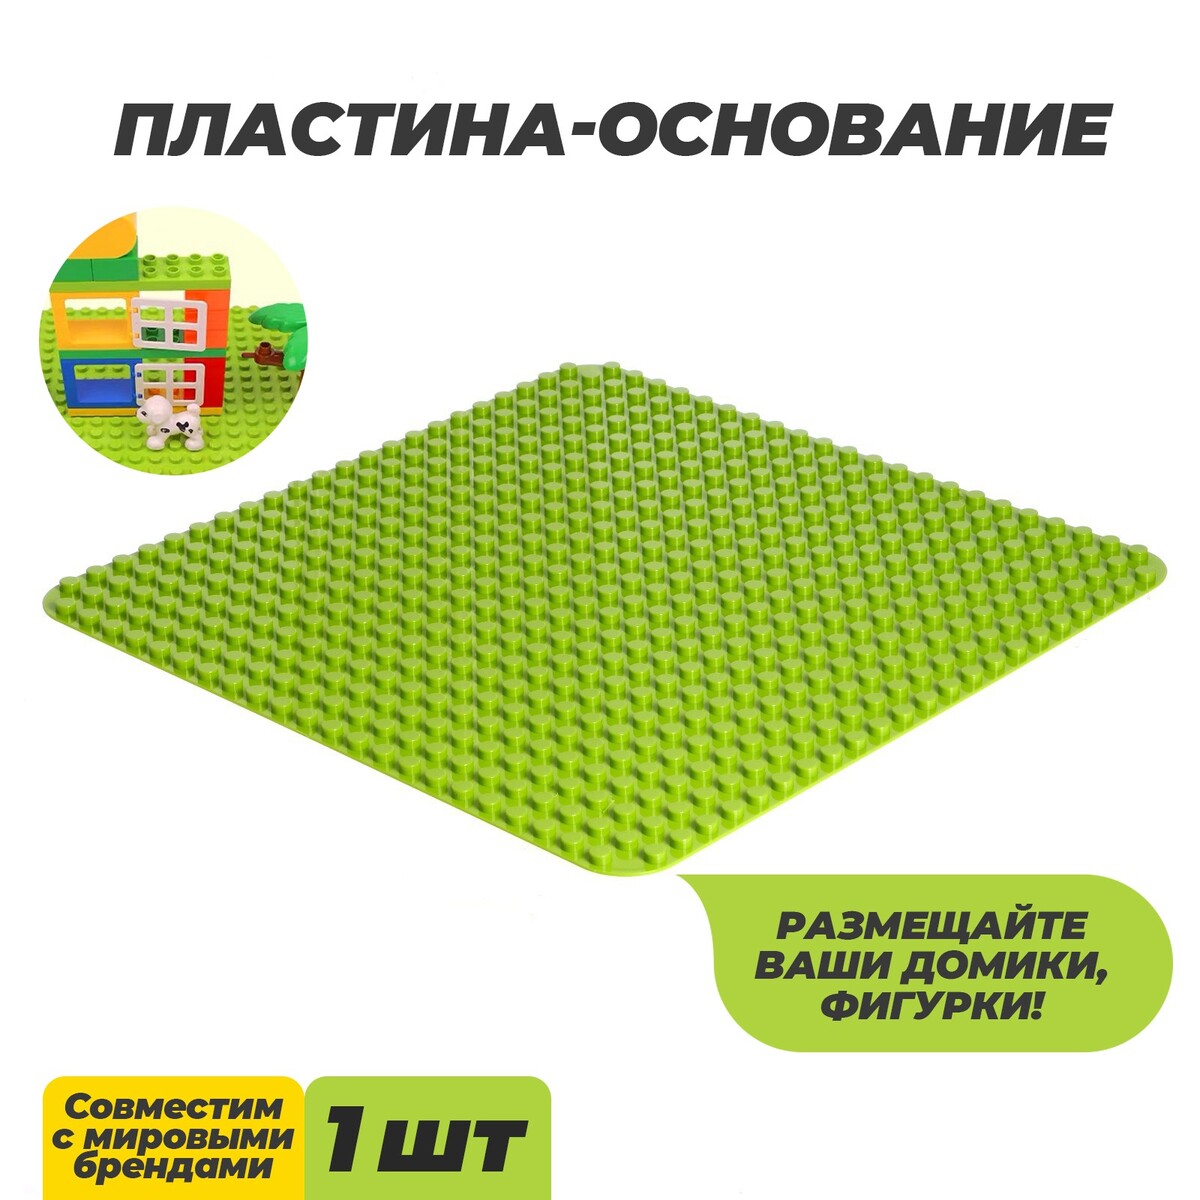 Пластина-основание для конструктора, 38,4 × 38,4 см, цвет салатовый